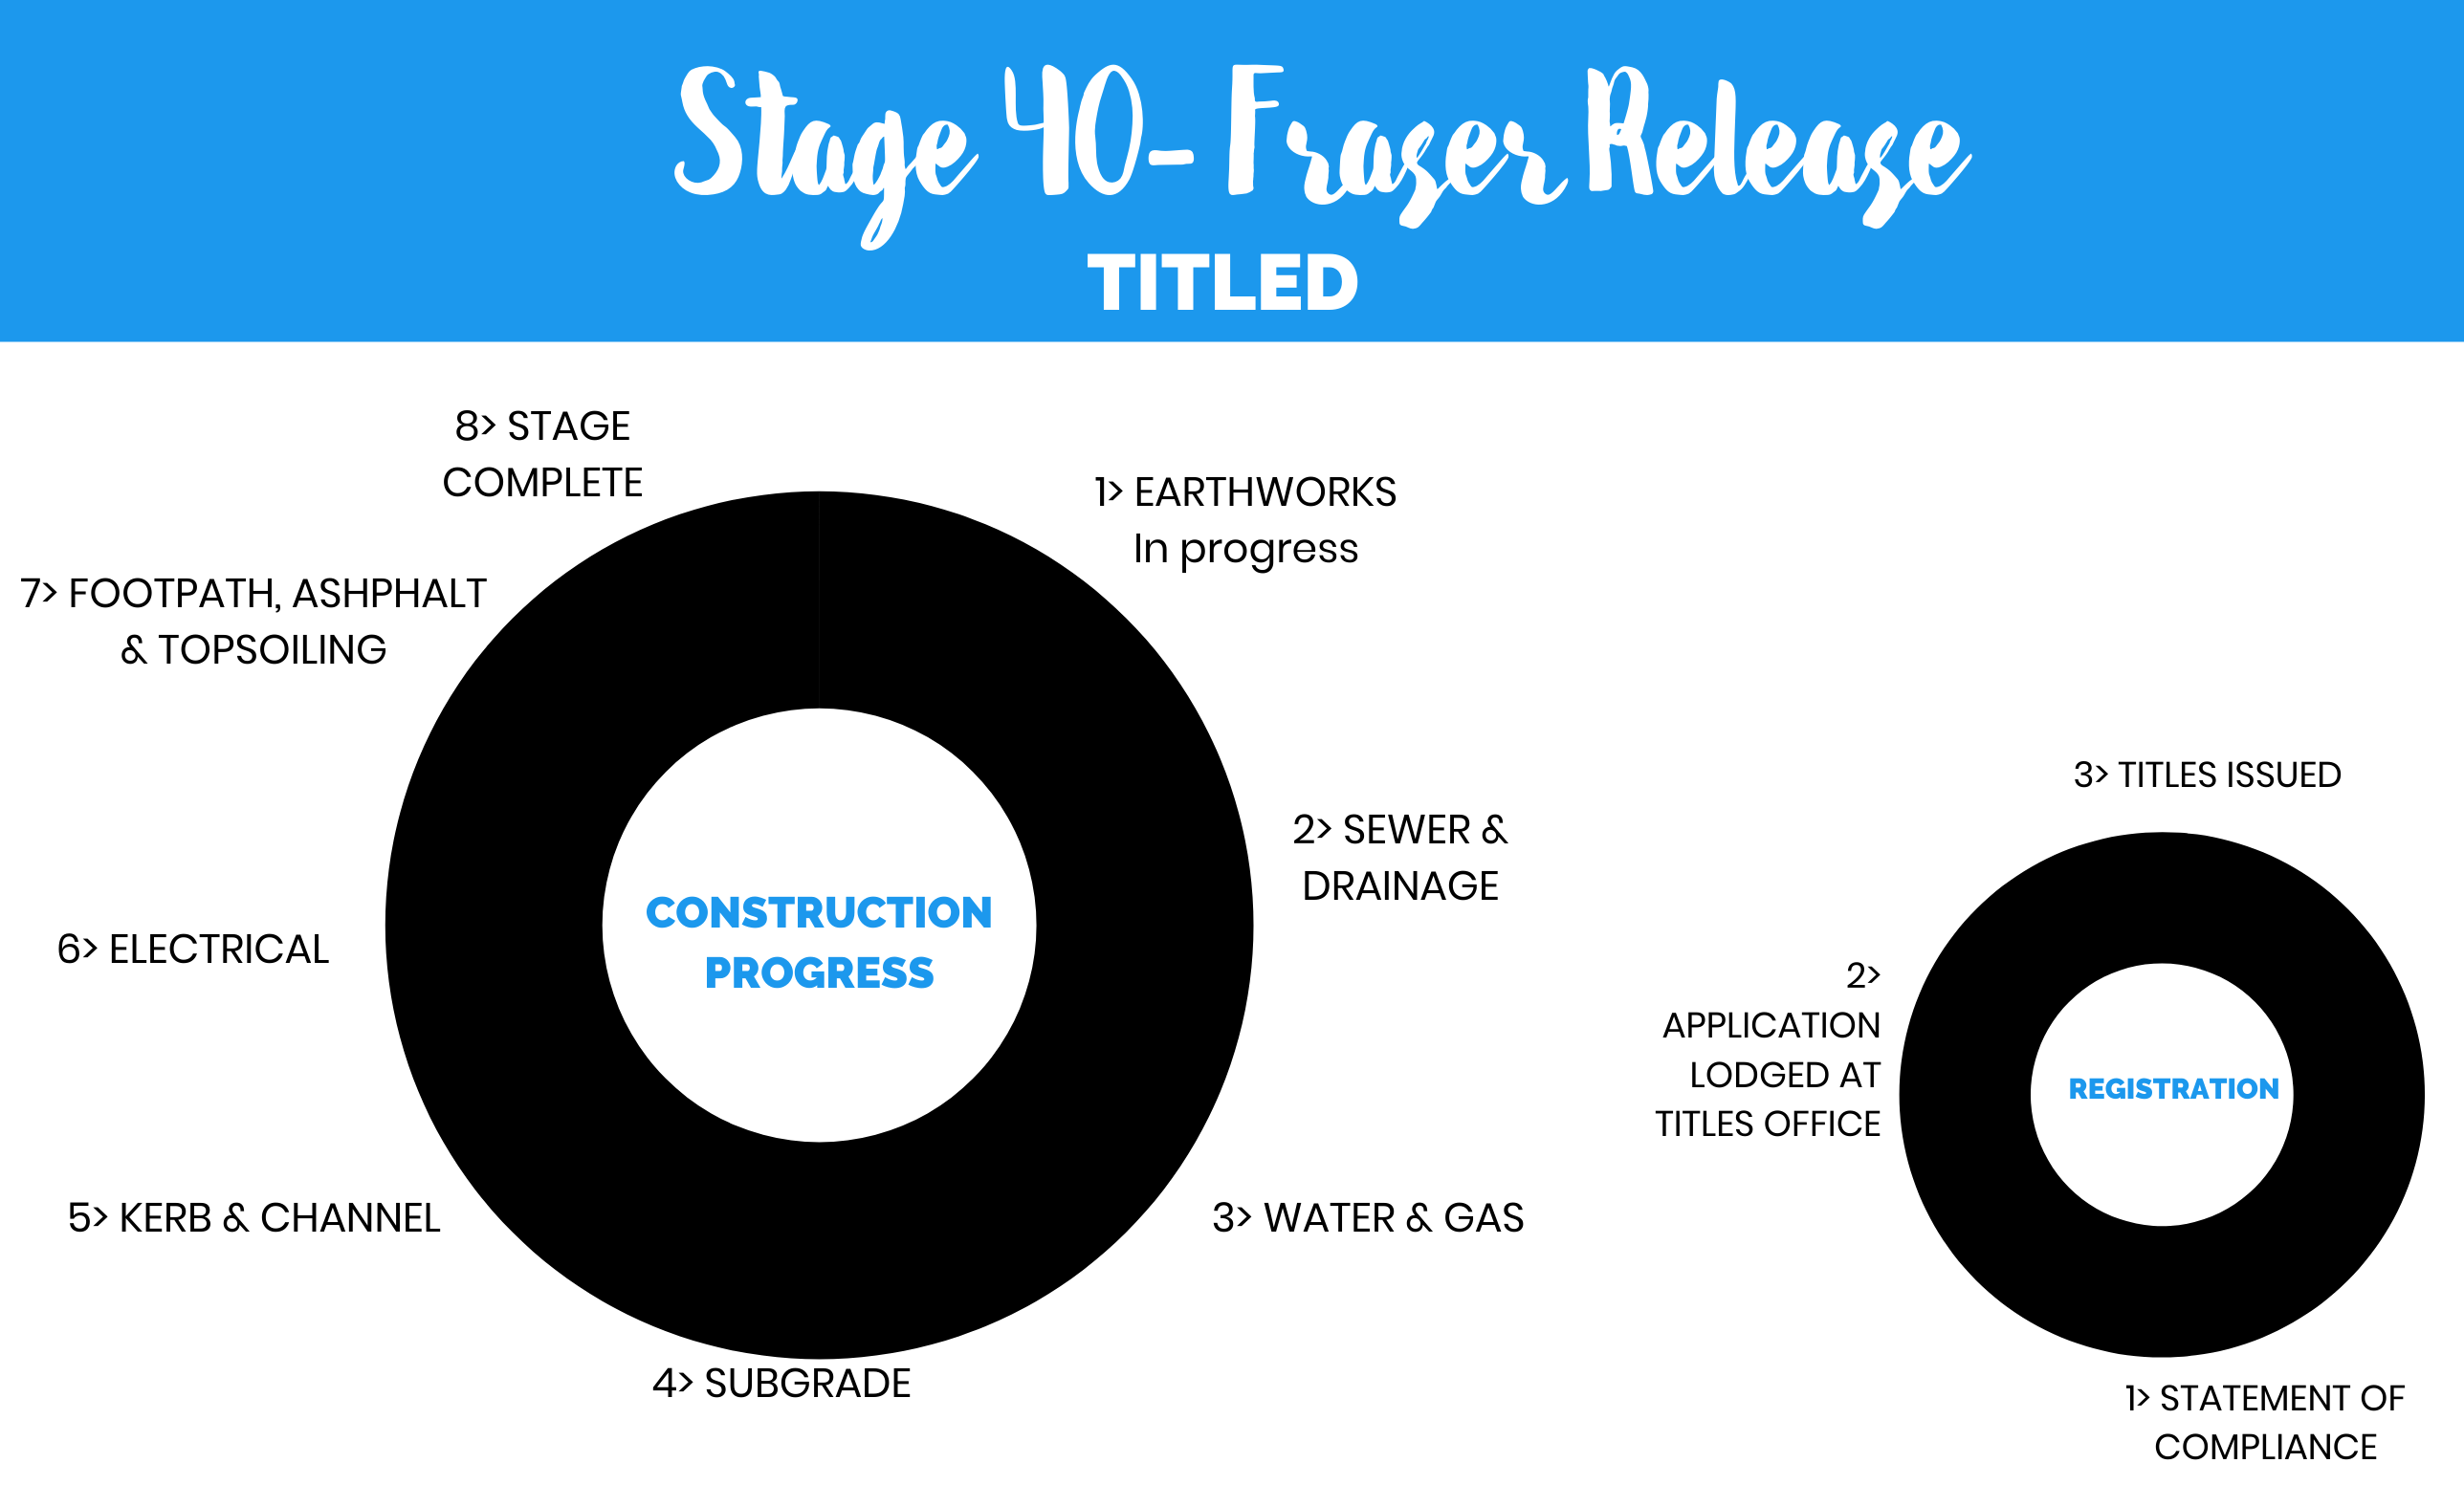 Stage 40 - Fraser Release